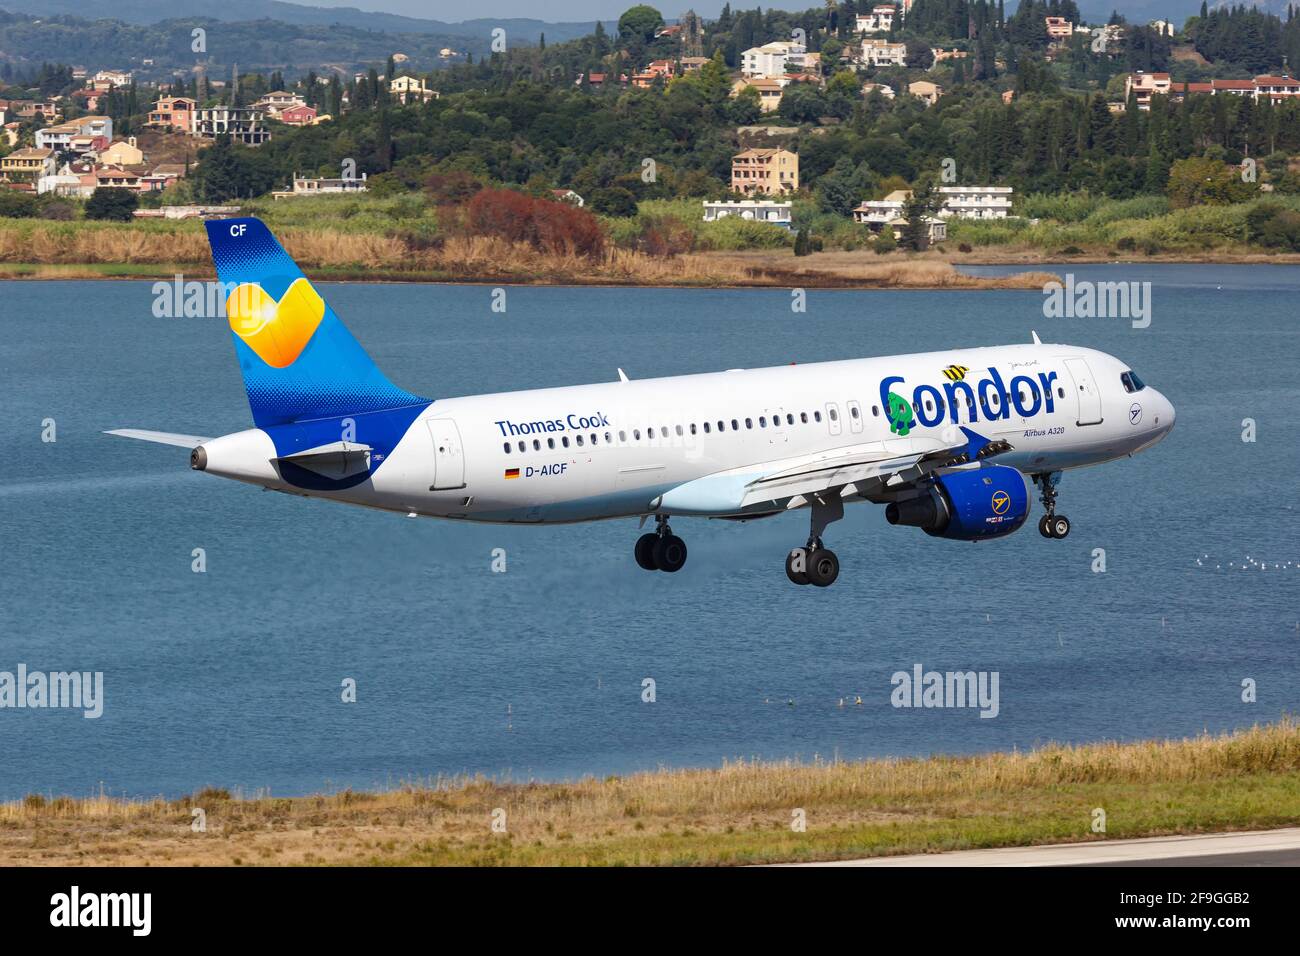 Corfù, Grecia – 16. Settembre 2017: Condor Airbus A320 all'aeroporto di Corfù (CFU) in Grecia. Airbus è un produttore di aeromobili di Tolosa, Francia. Foto Stock